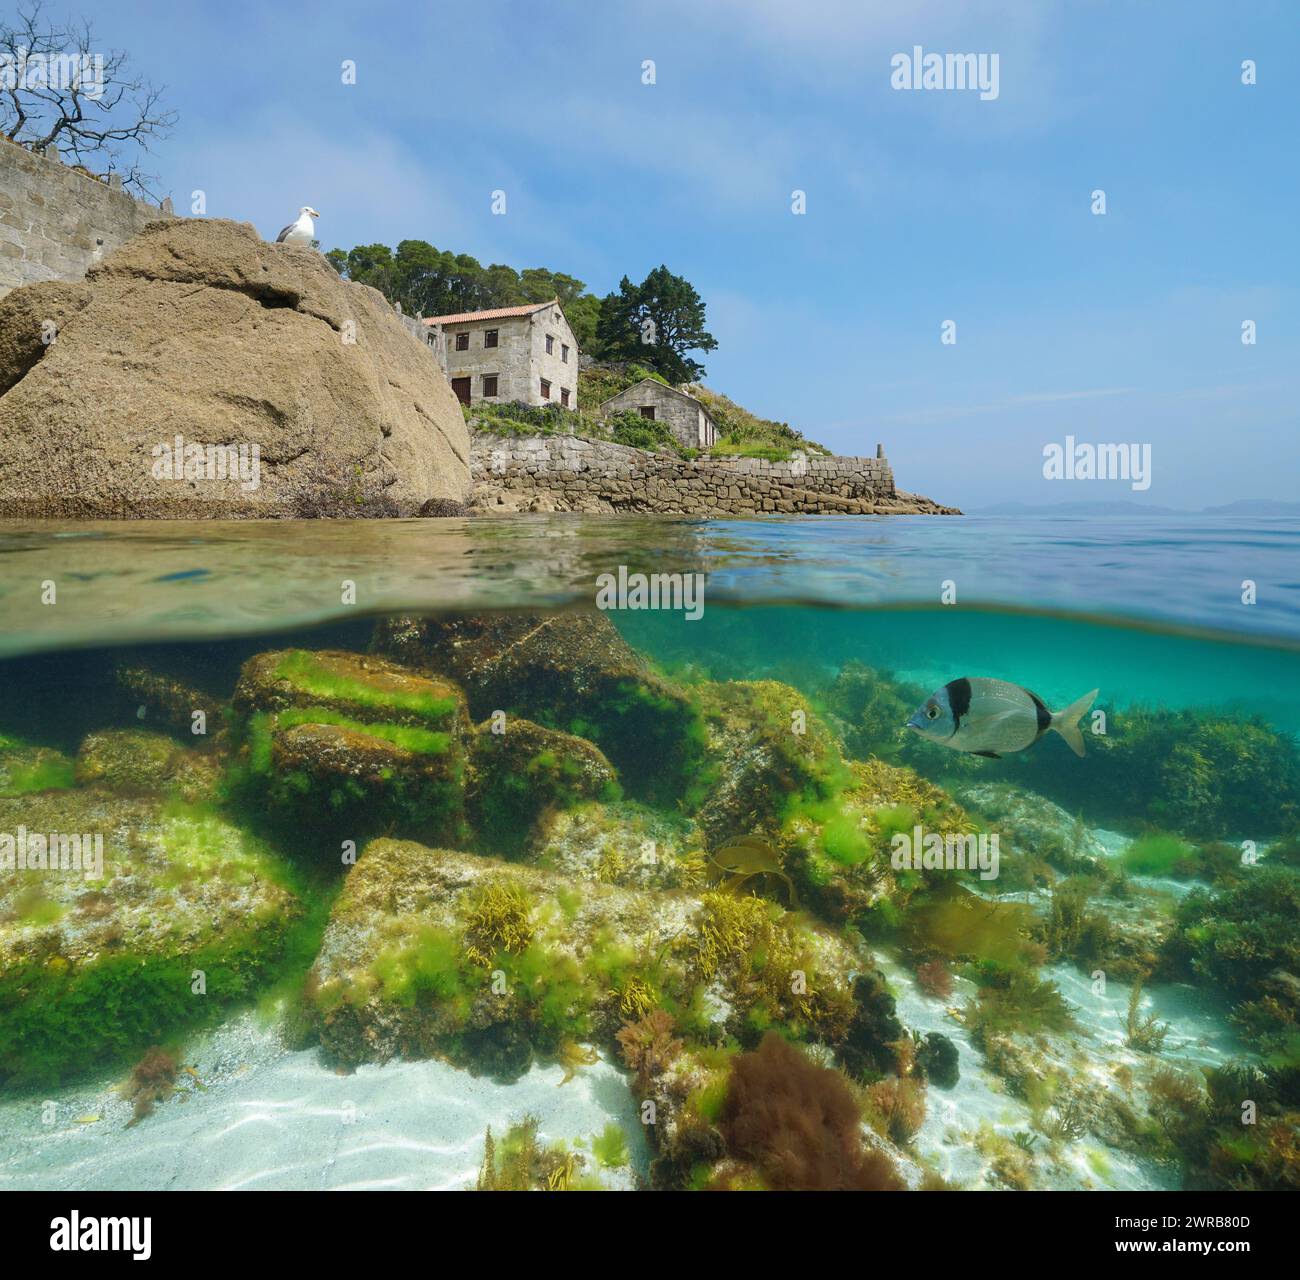 Côte avec vieille maison sur le rivage de l'océan Atlantique en Espagne, vue partagée moitié sur et sous la surface de l'eau, scène naturelle, Galice Banque D'Images